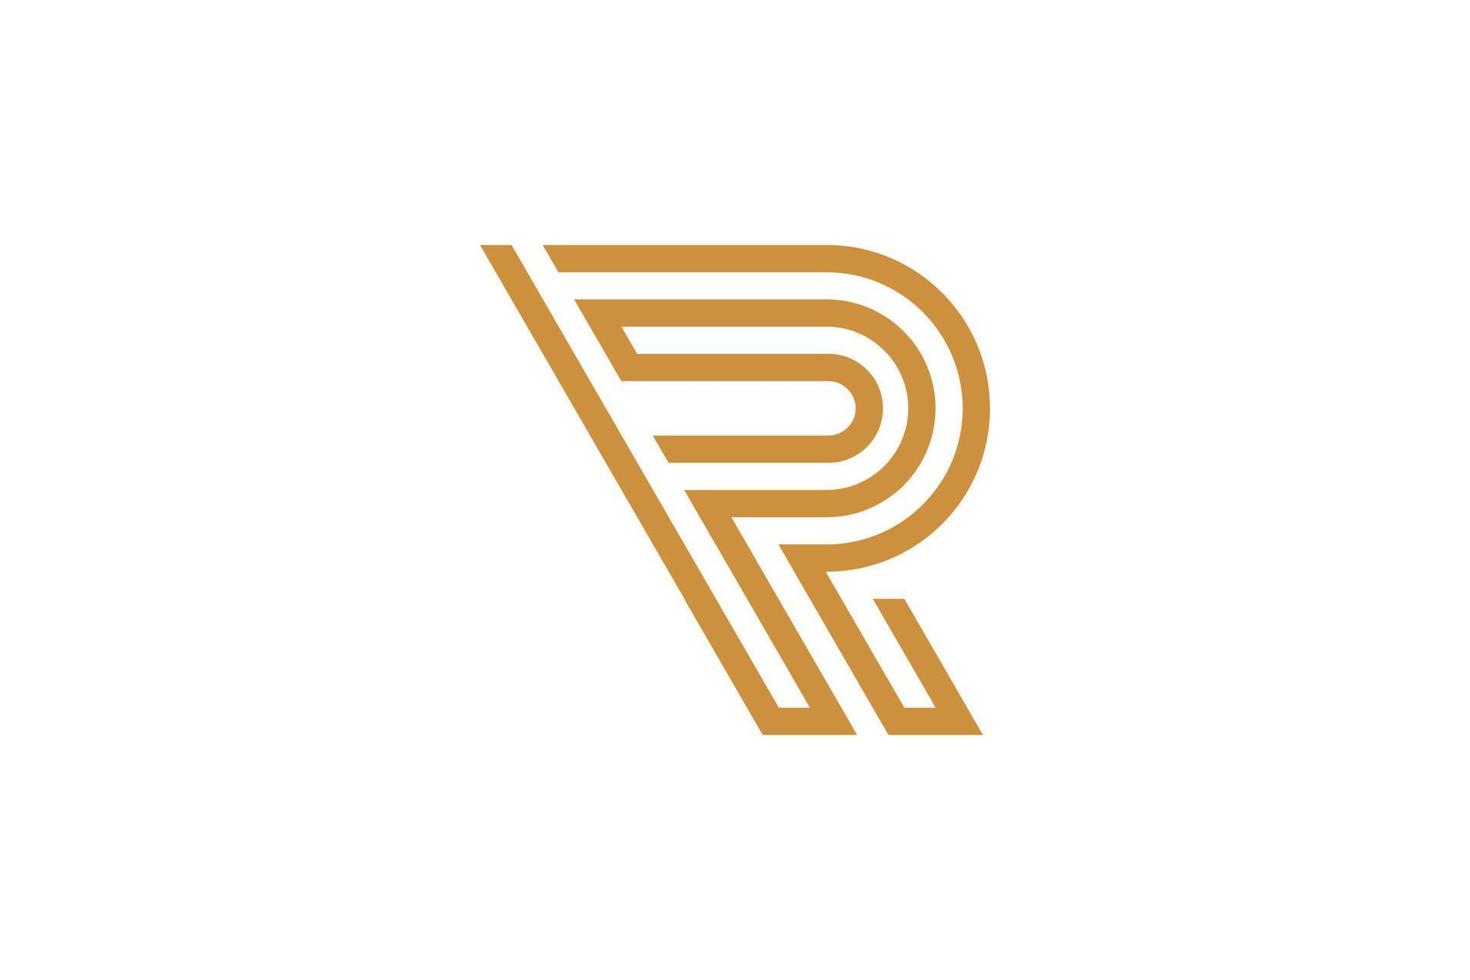 Monoline Initial Letter R Vector Logo